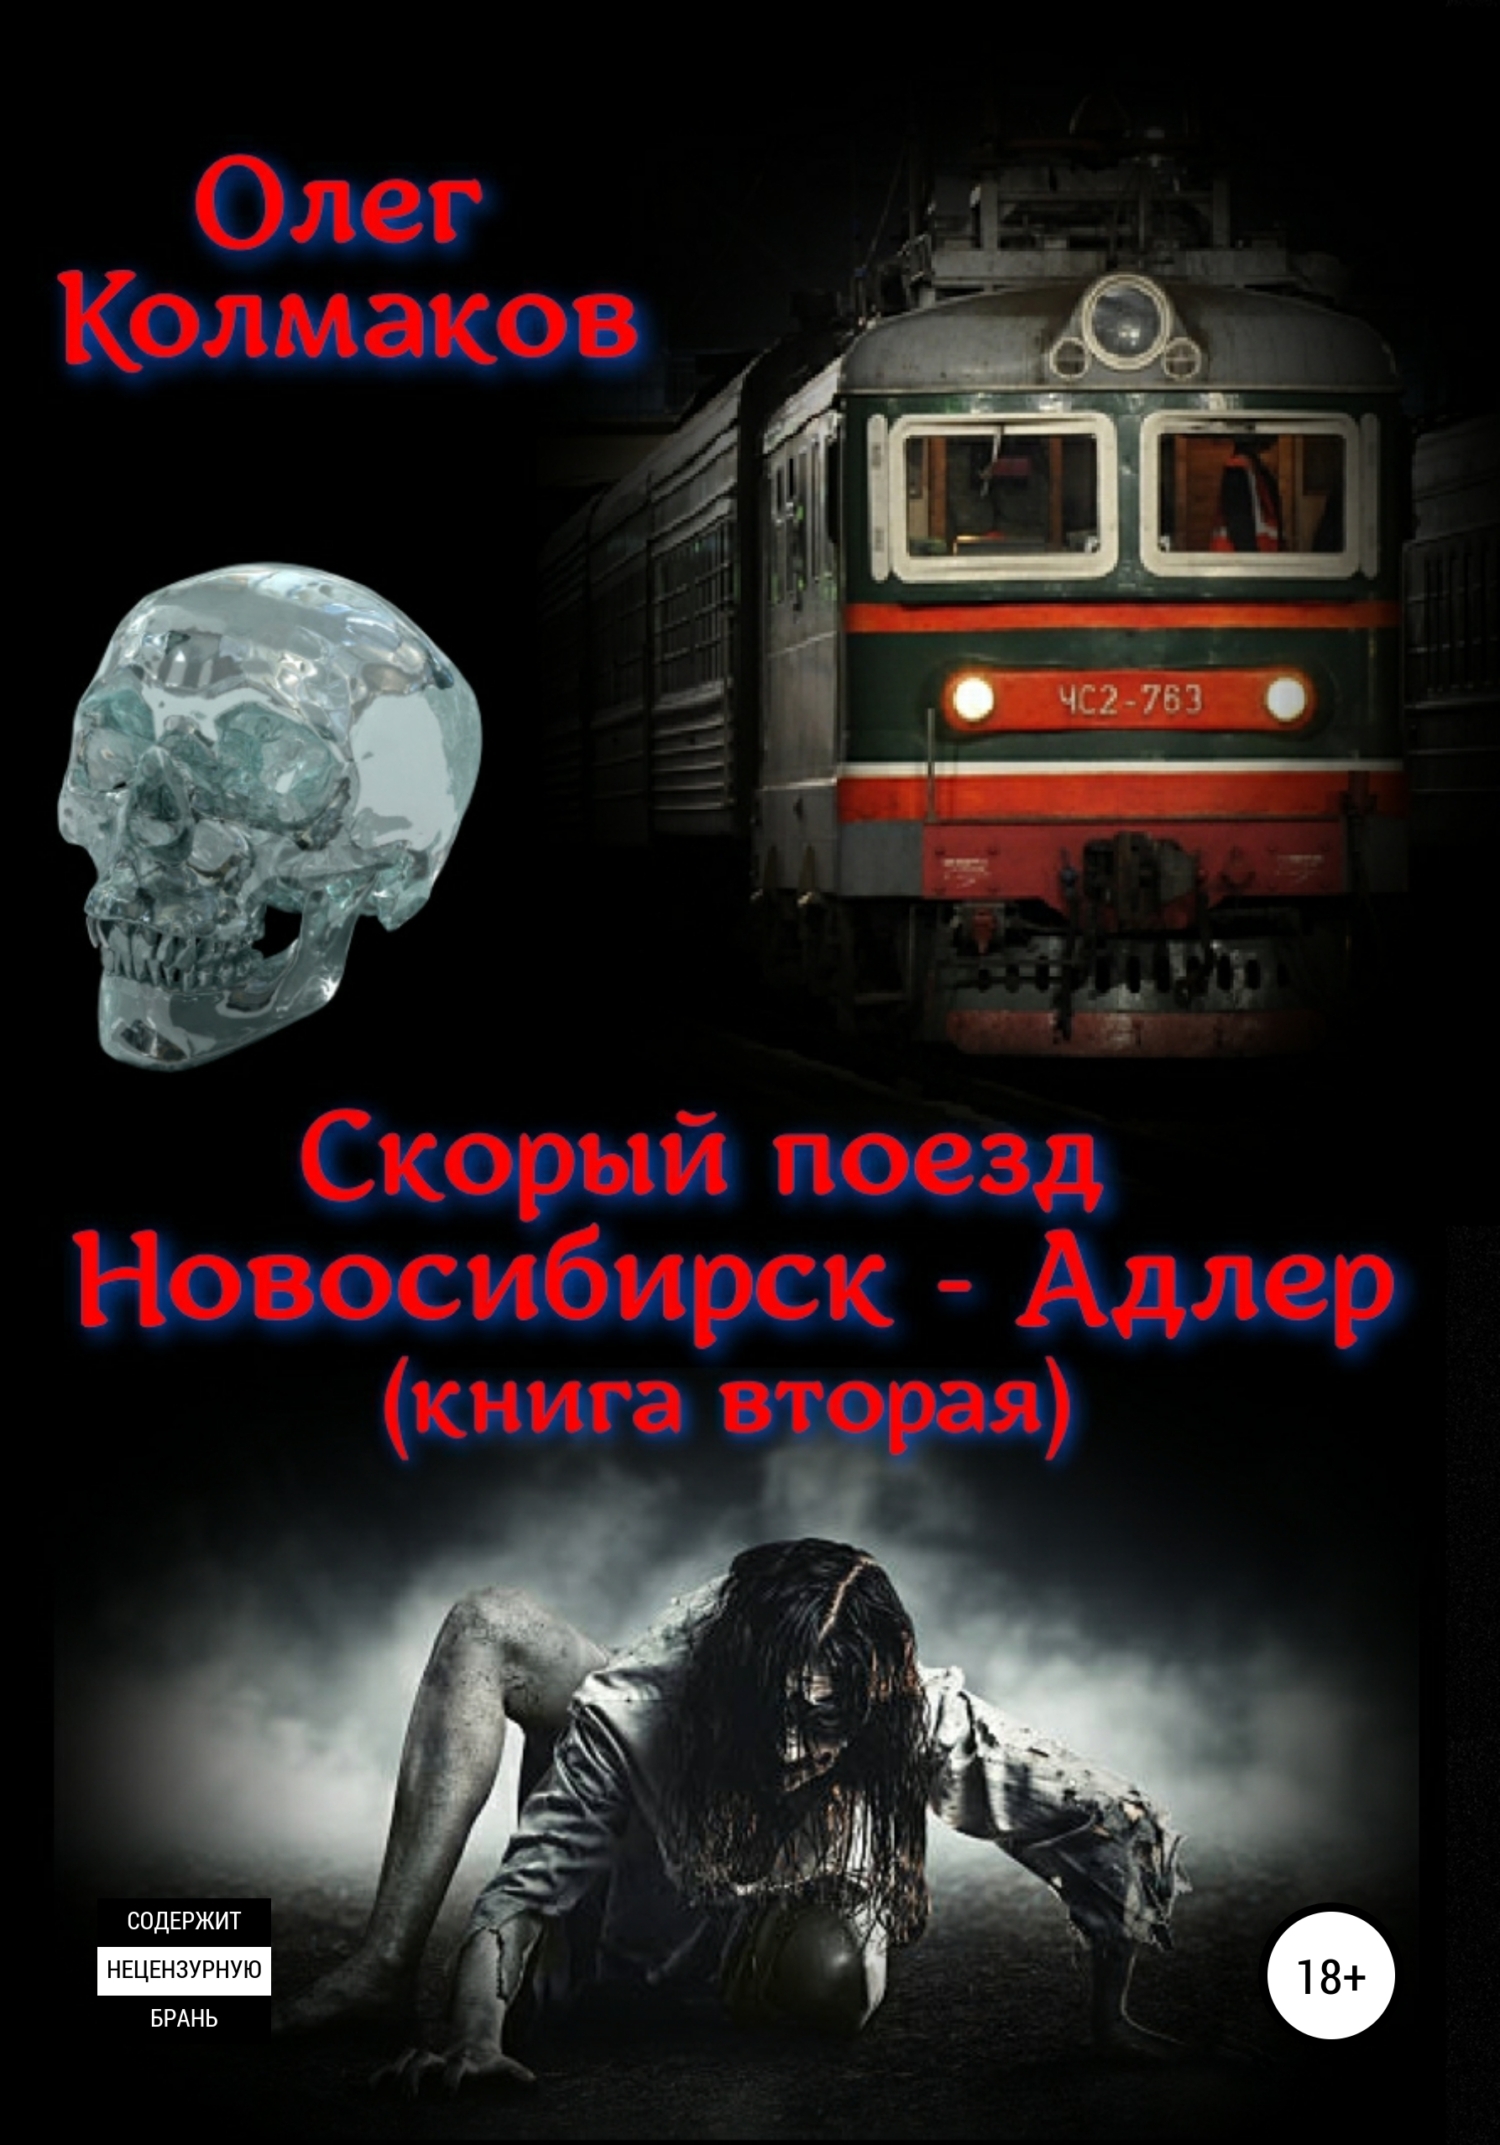 Скорый поезд «Новосибирск – Адлер». Книга вторая